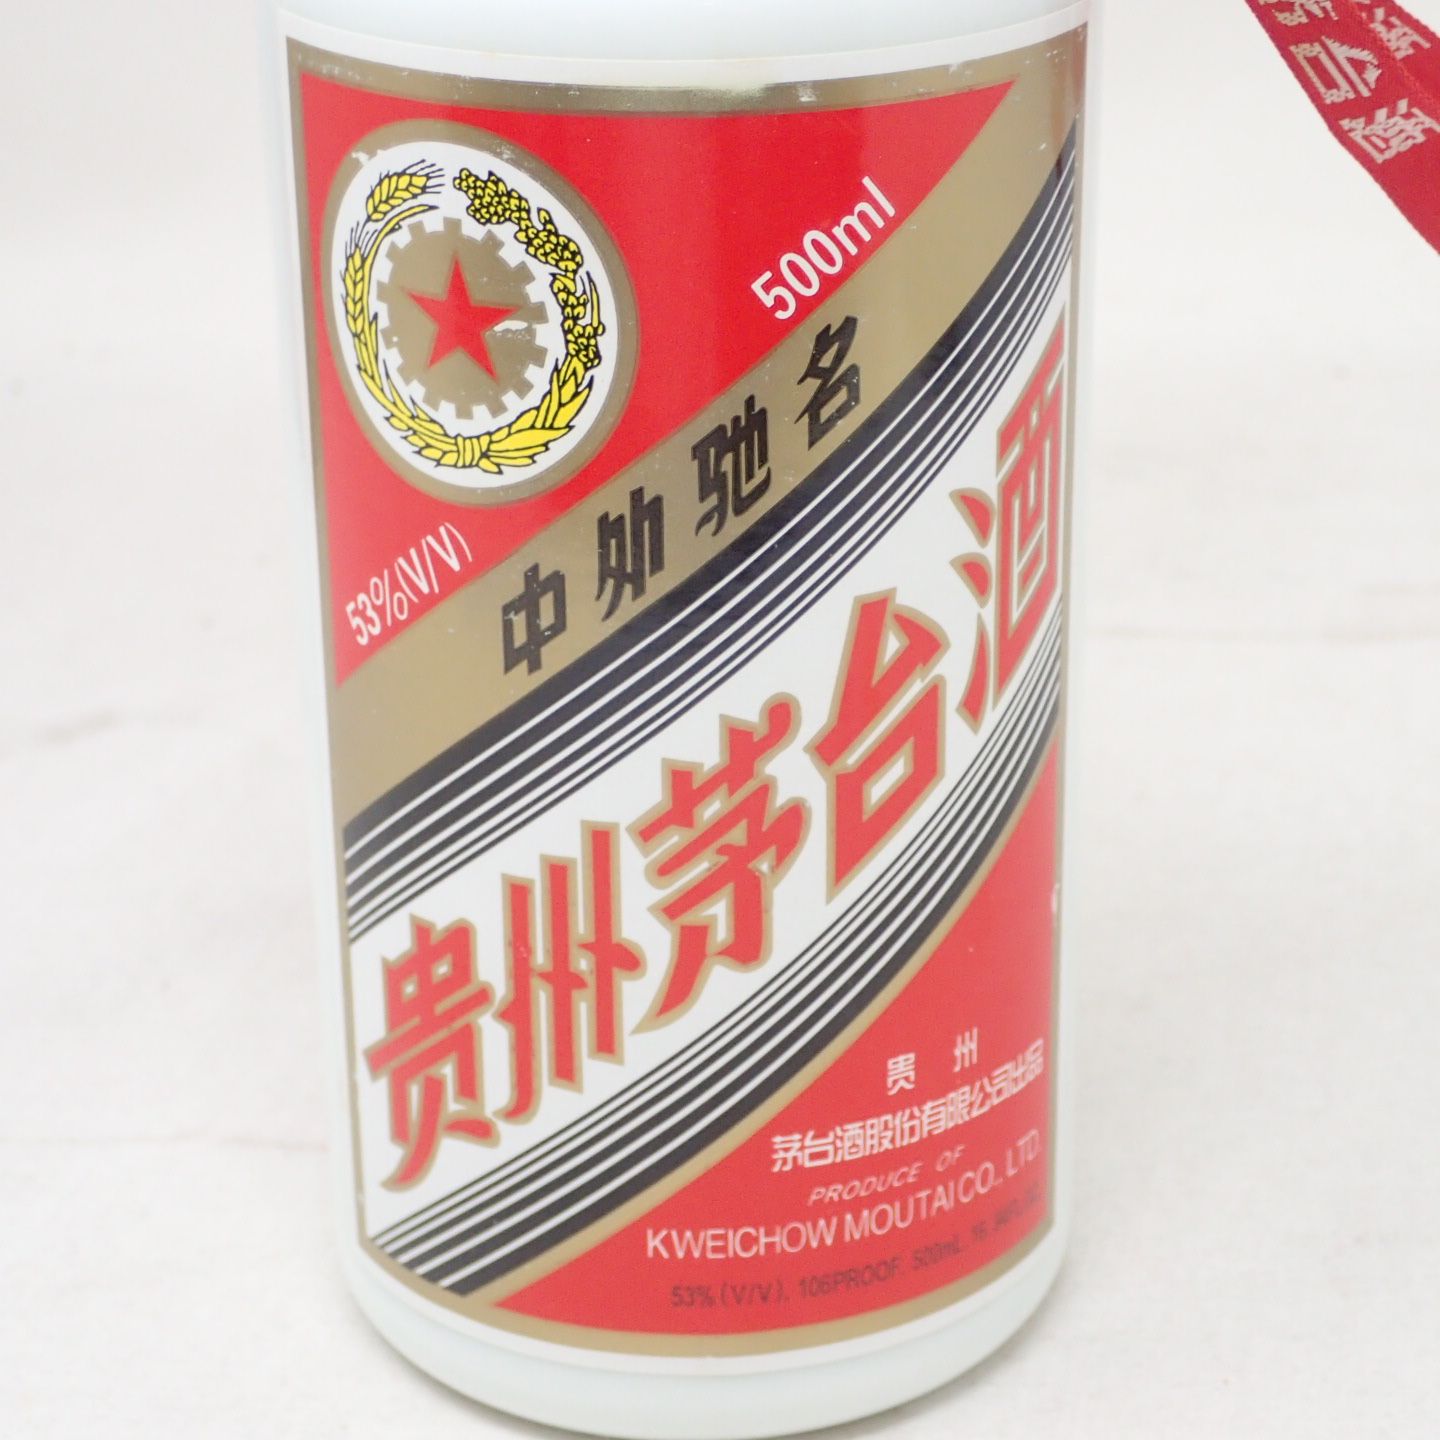 貴州茅台酒 マオタイ酒 五星ラベル た53% 中国酒 - 飲料/酒